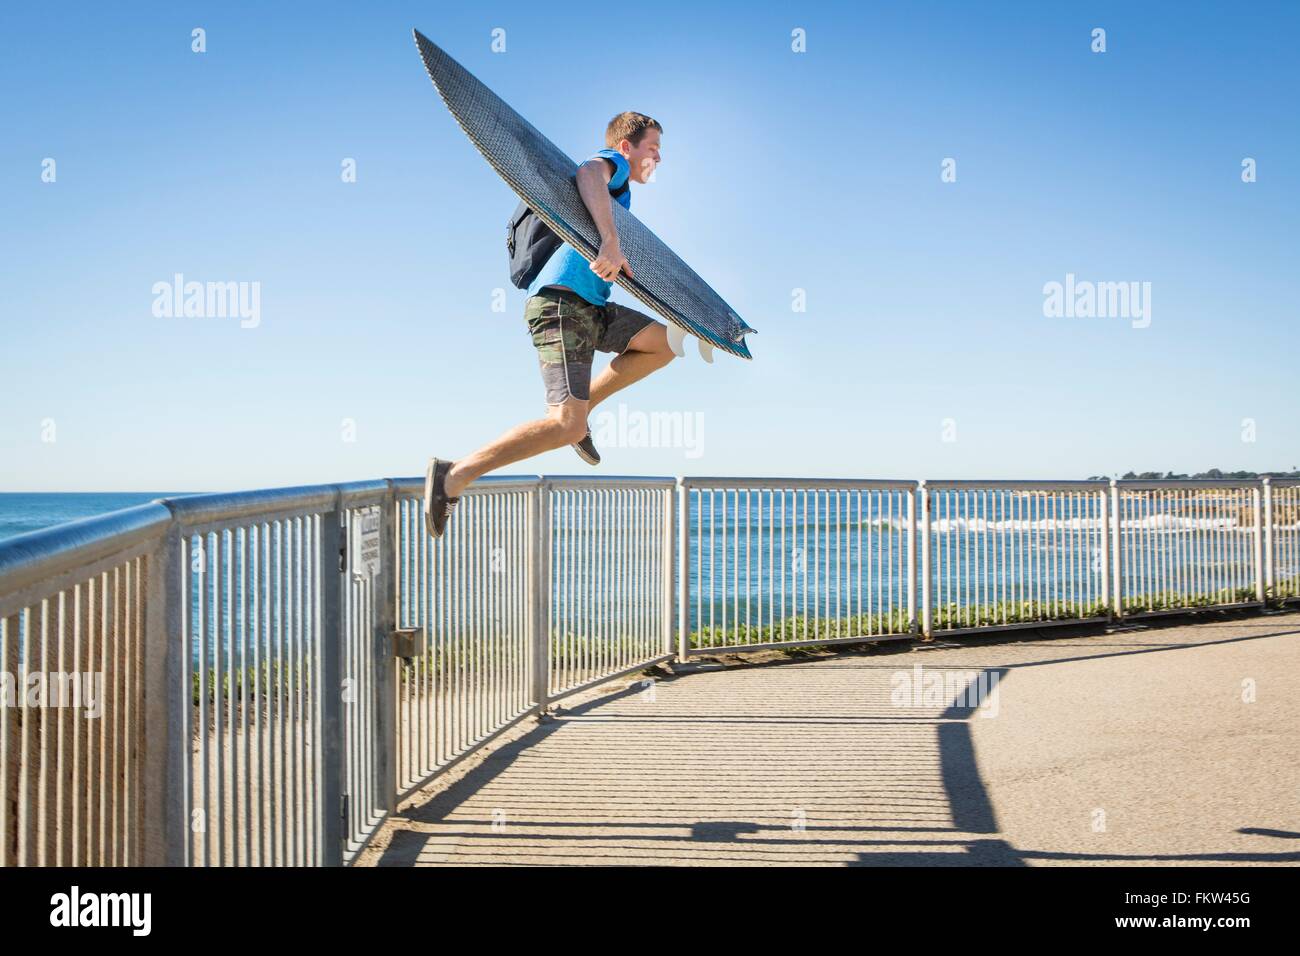 Giovane uomo, portando le tavole da surf, saltando da ringhiere accanto al mare Foto Stock